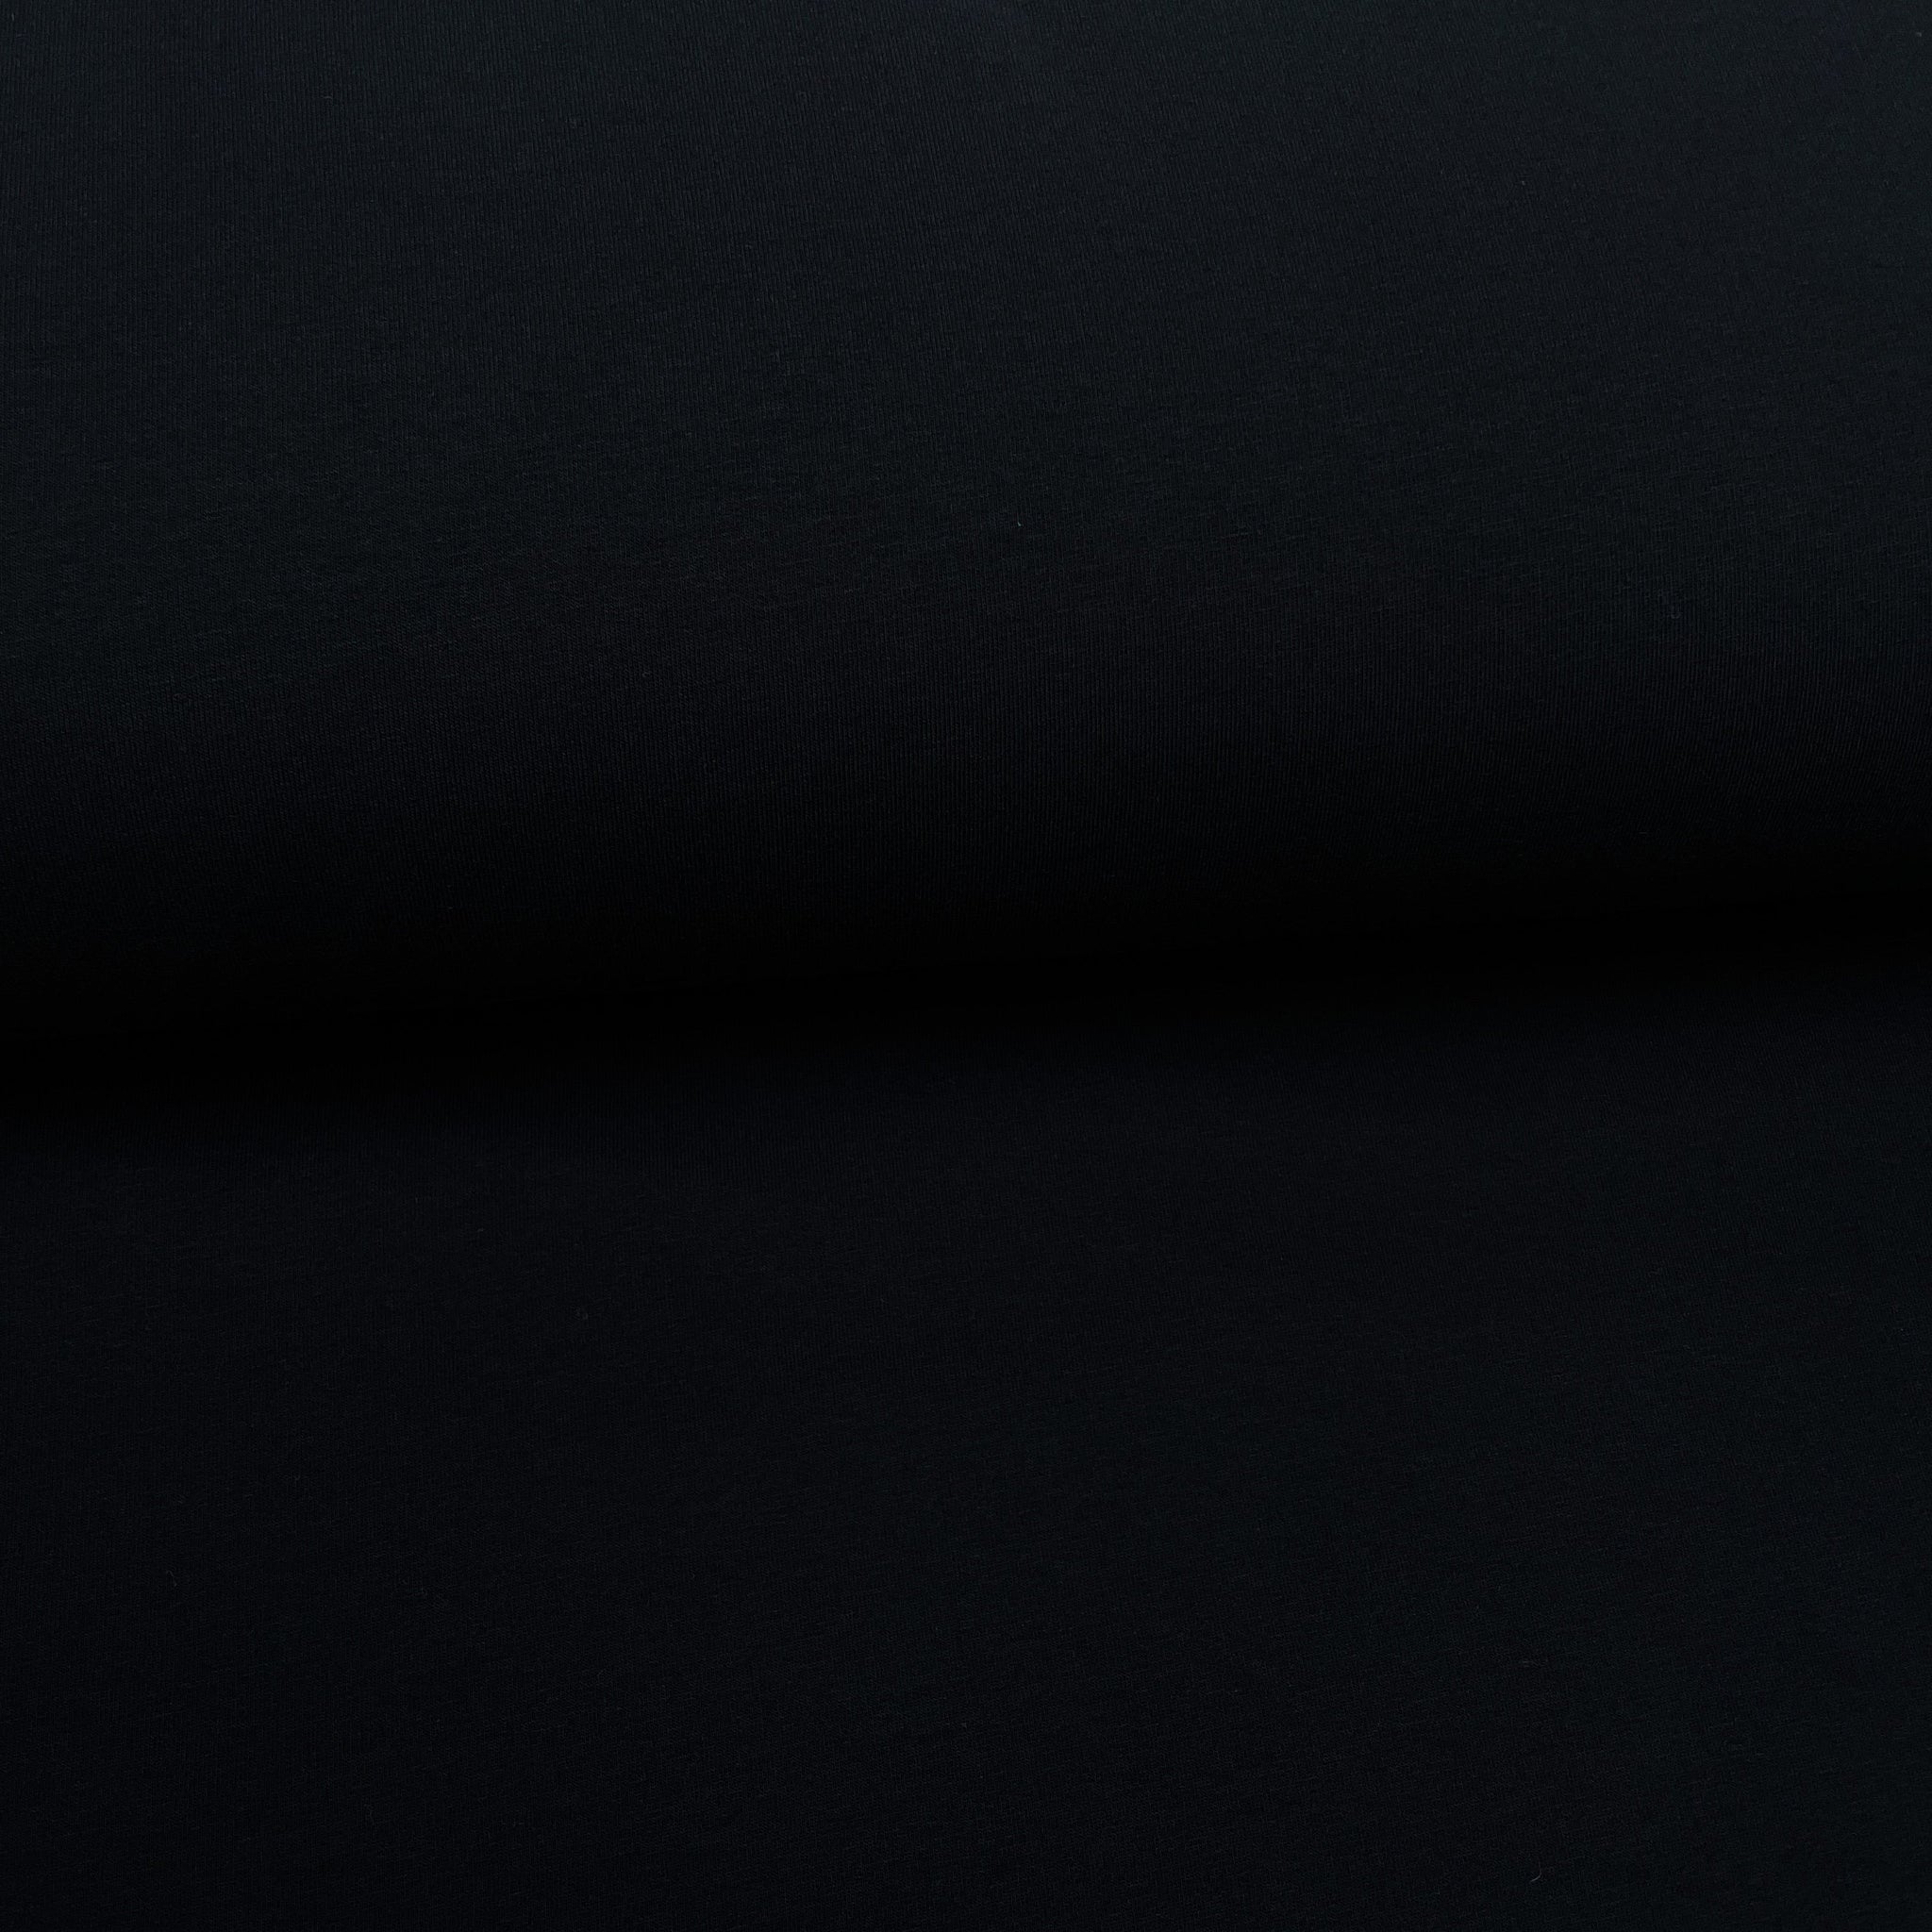 Fin de rouleau 17 cm - Noir - Coton ouaté biologique extensible uni